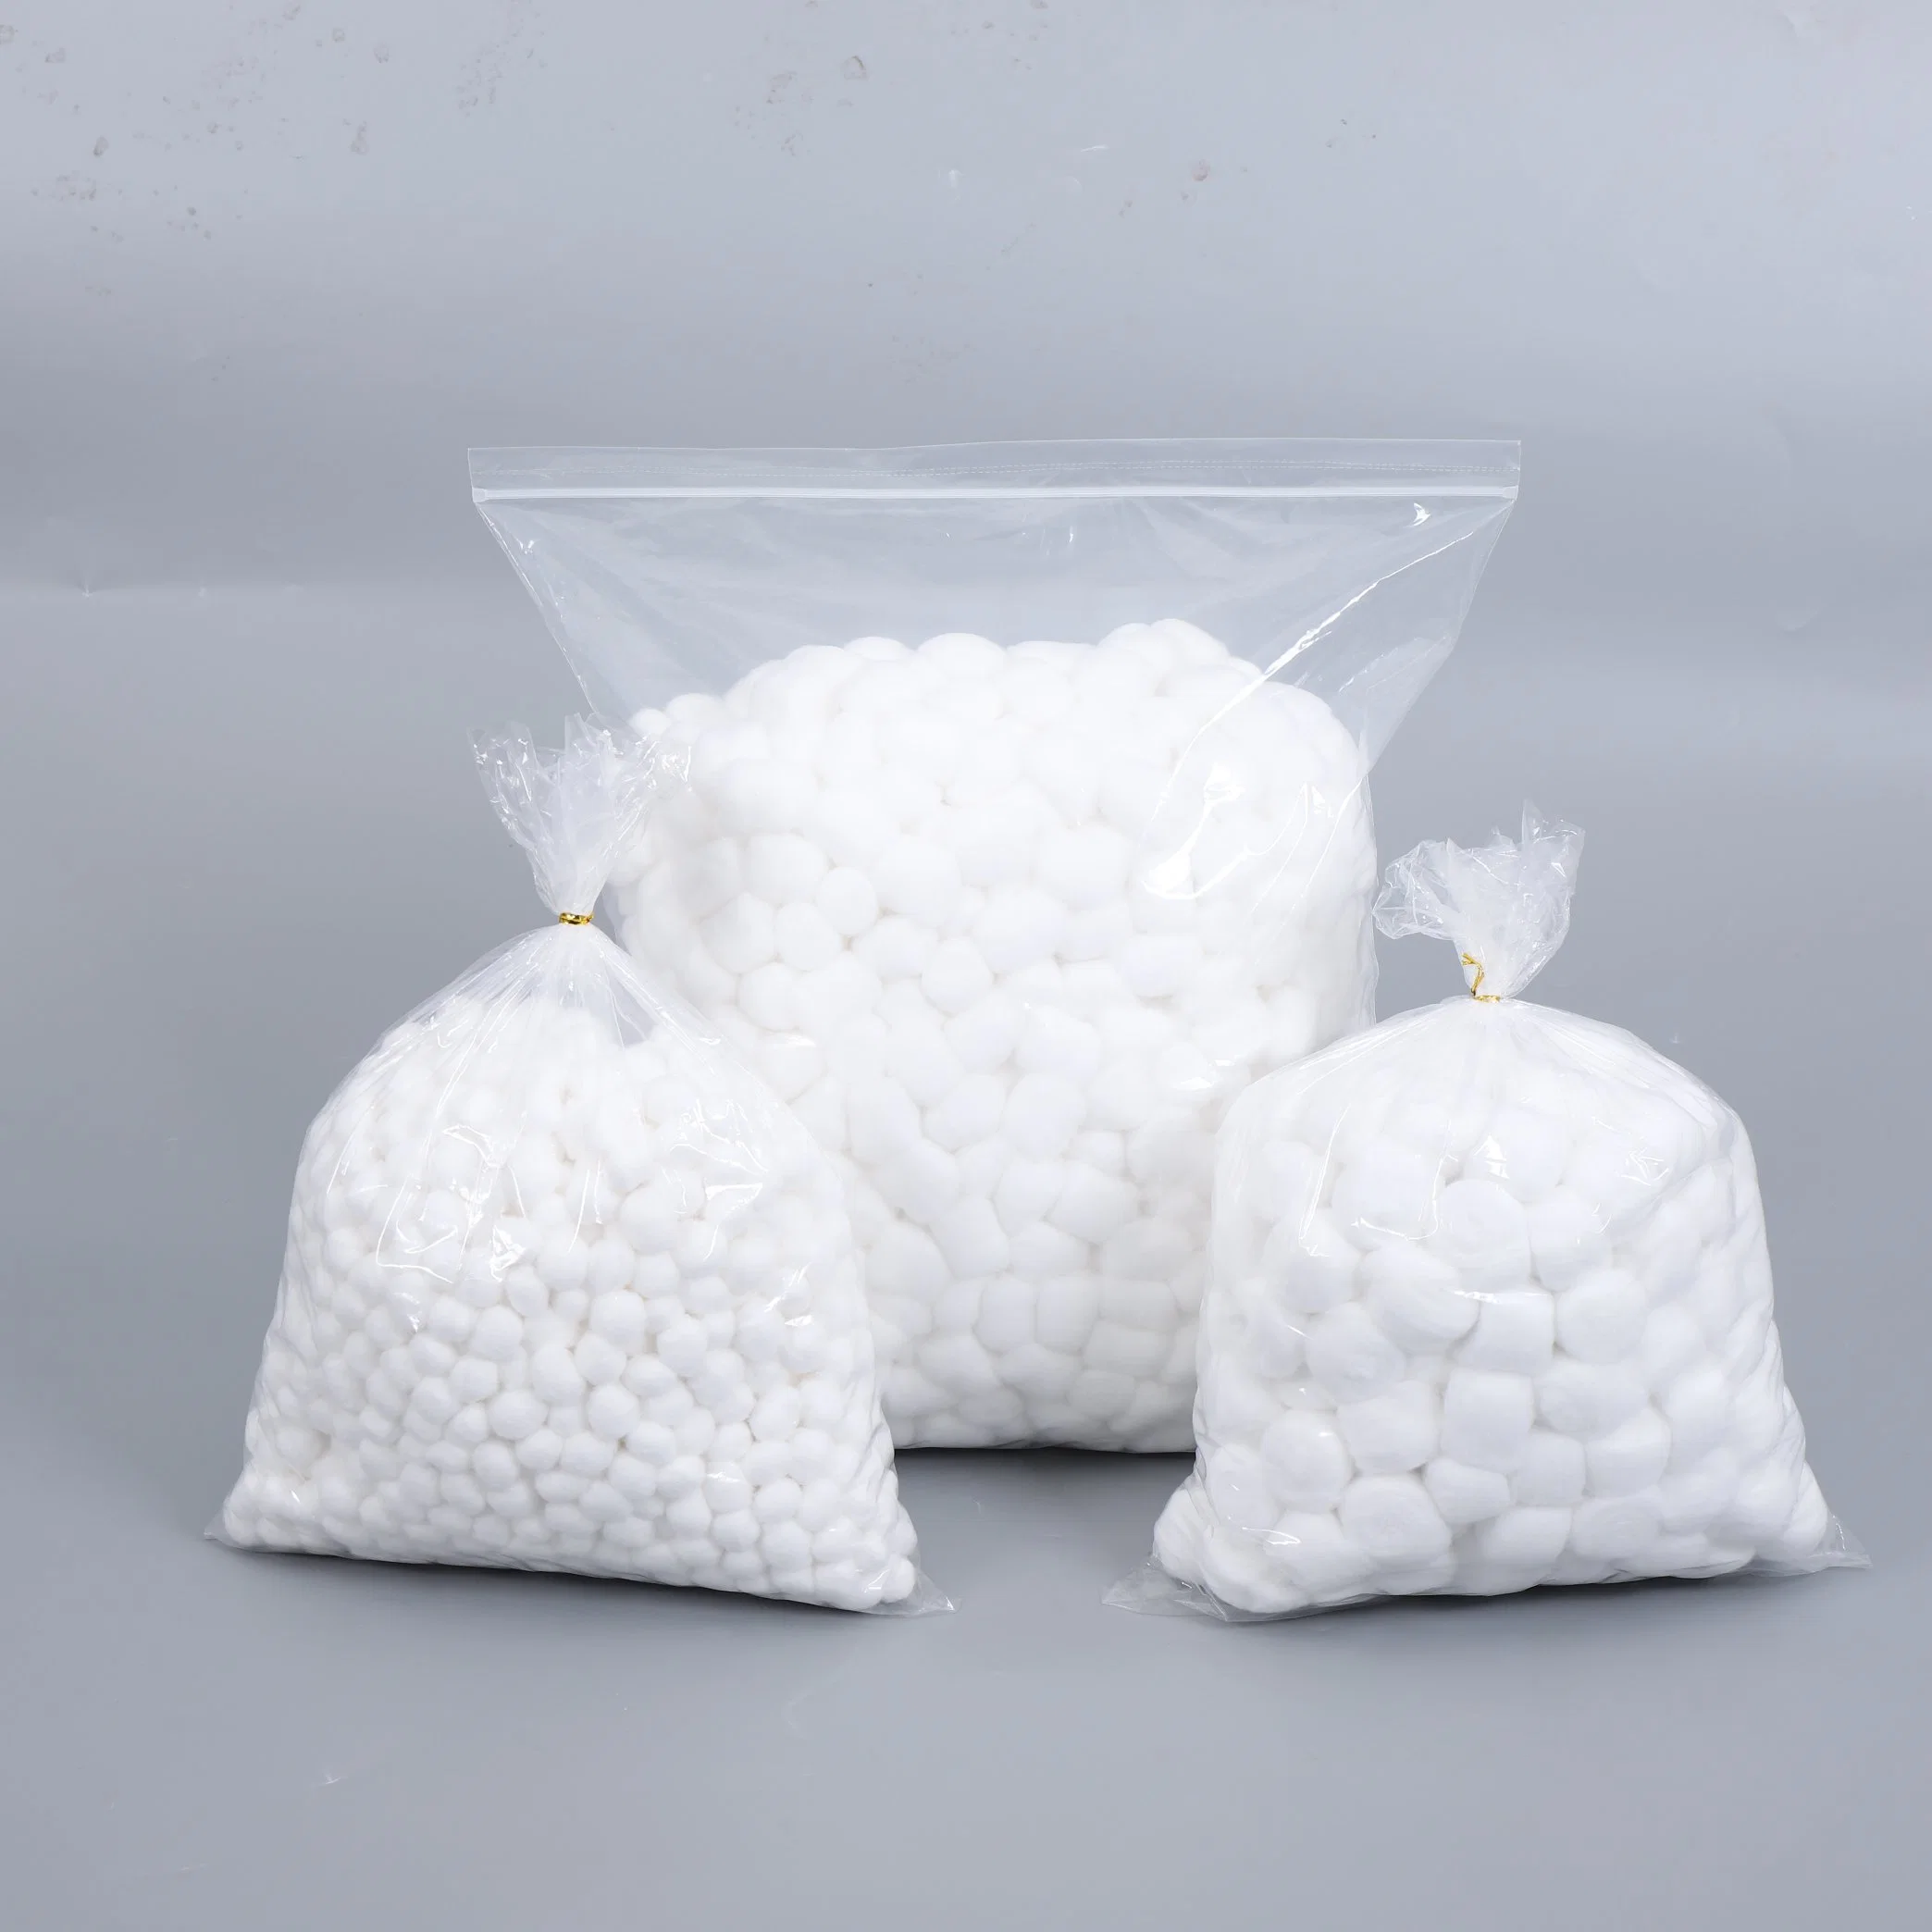 Haute qualité à faible prix des billes de laine de coton absorbant médicale des boules de coton